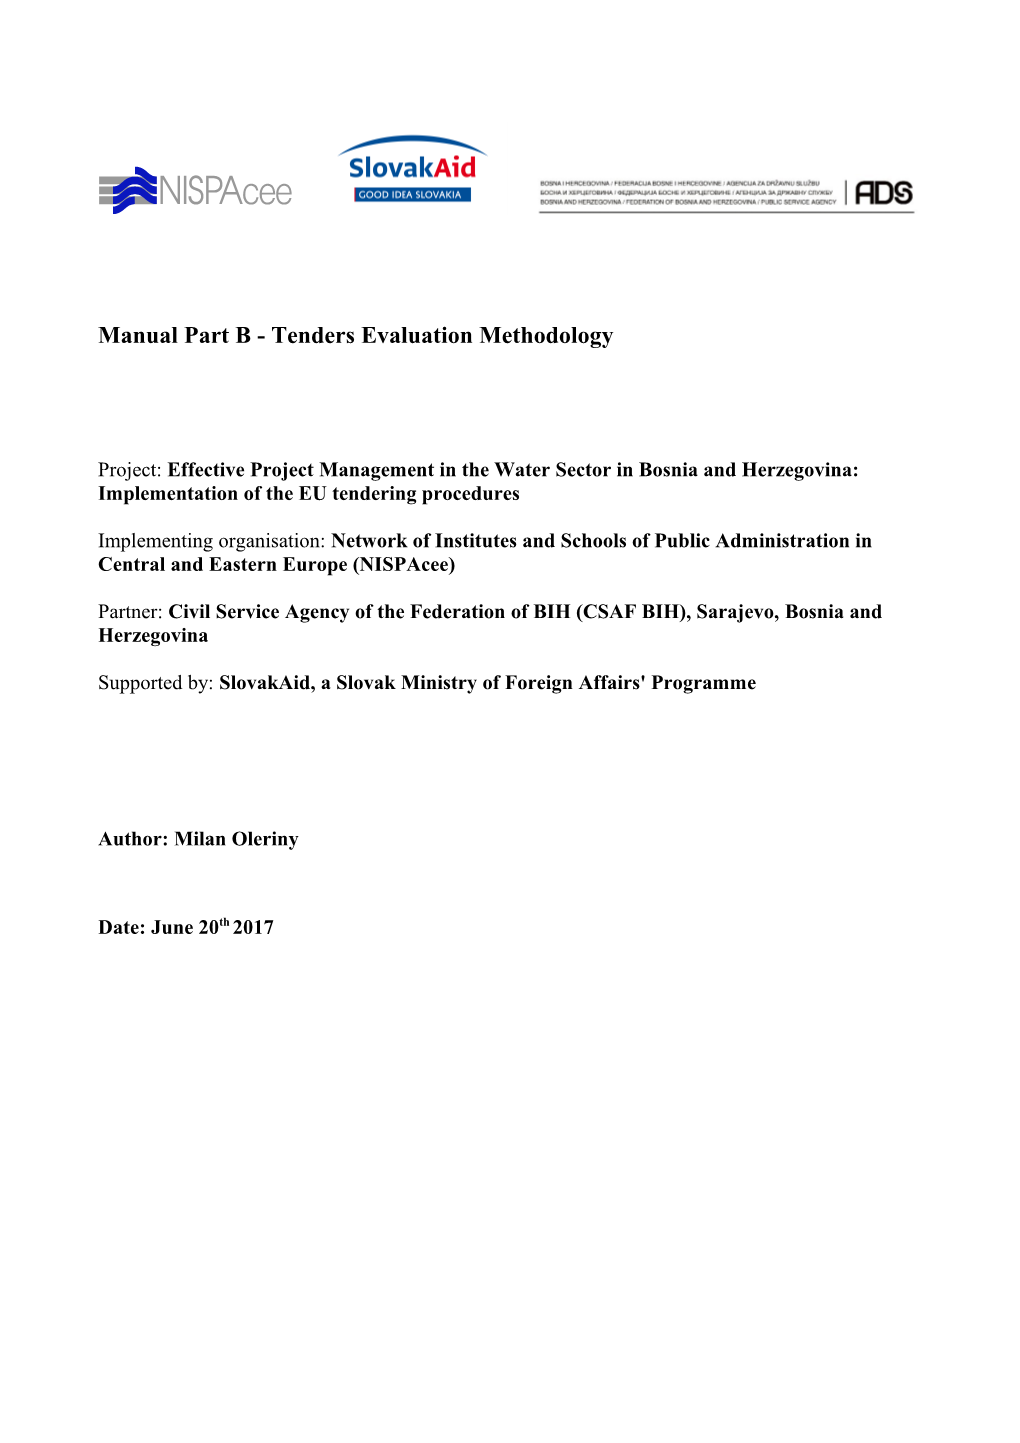 Manual Part B-Tenders Evaluation Methodology